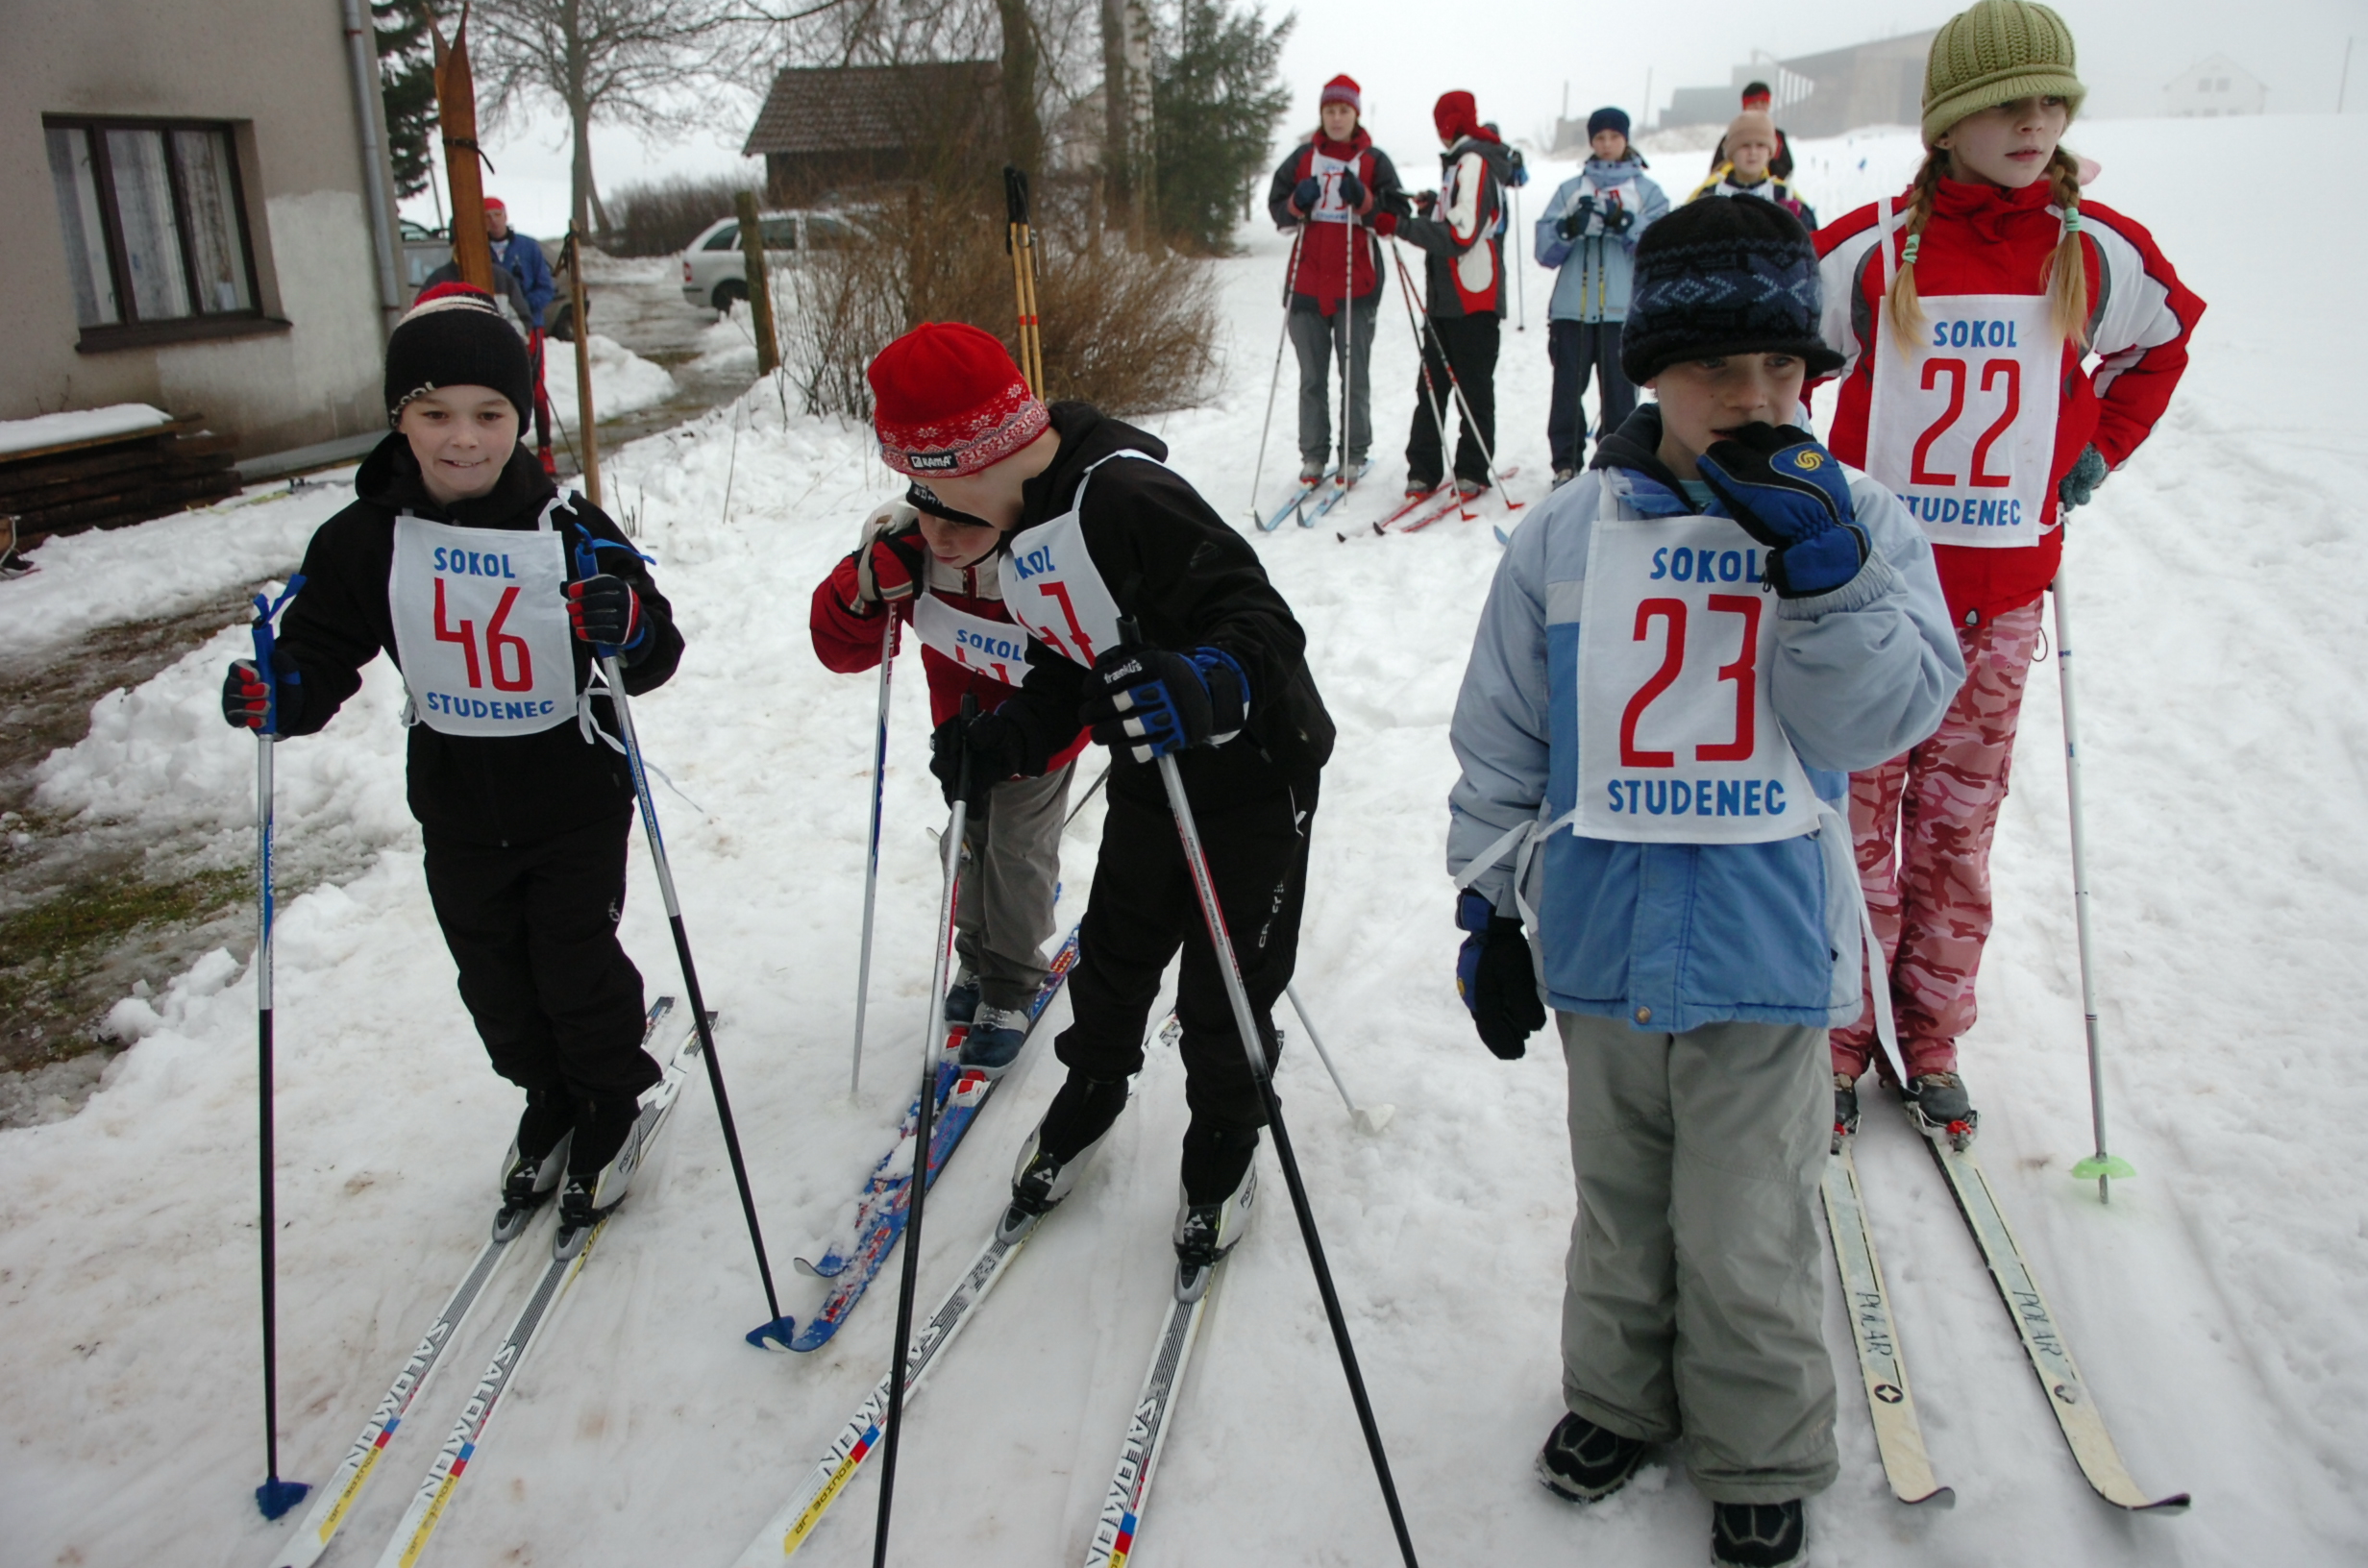 Žďárská stopa - lyžařské závody pro veřejnost